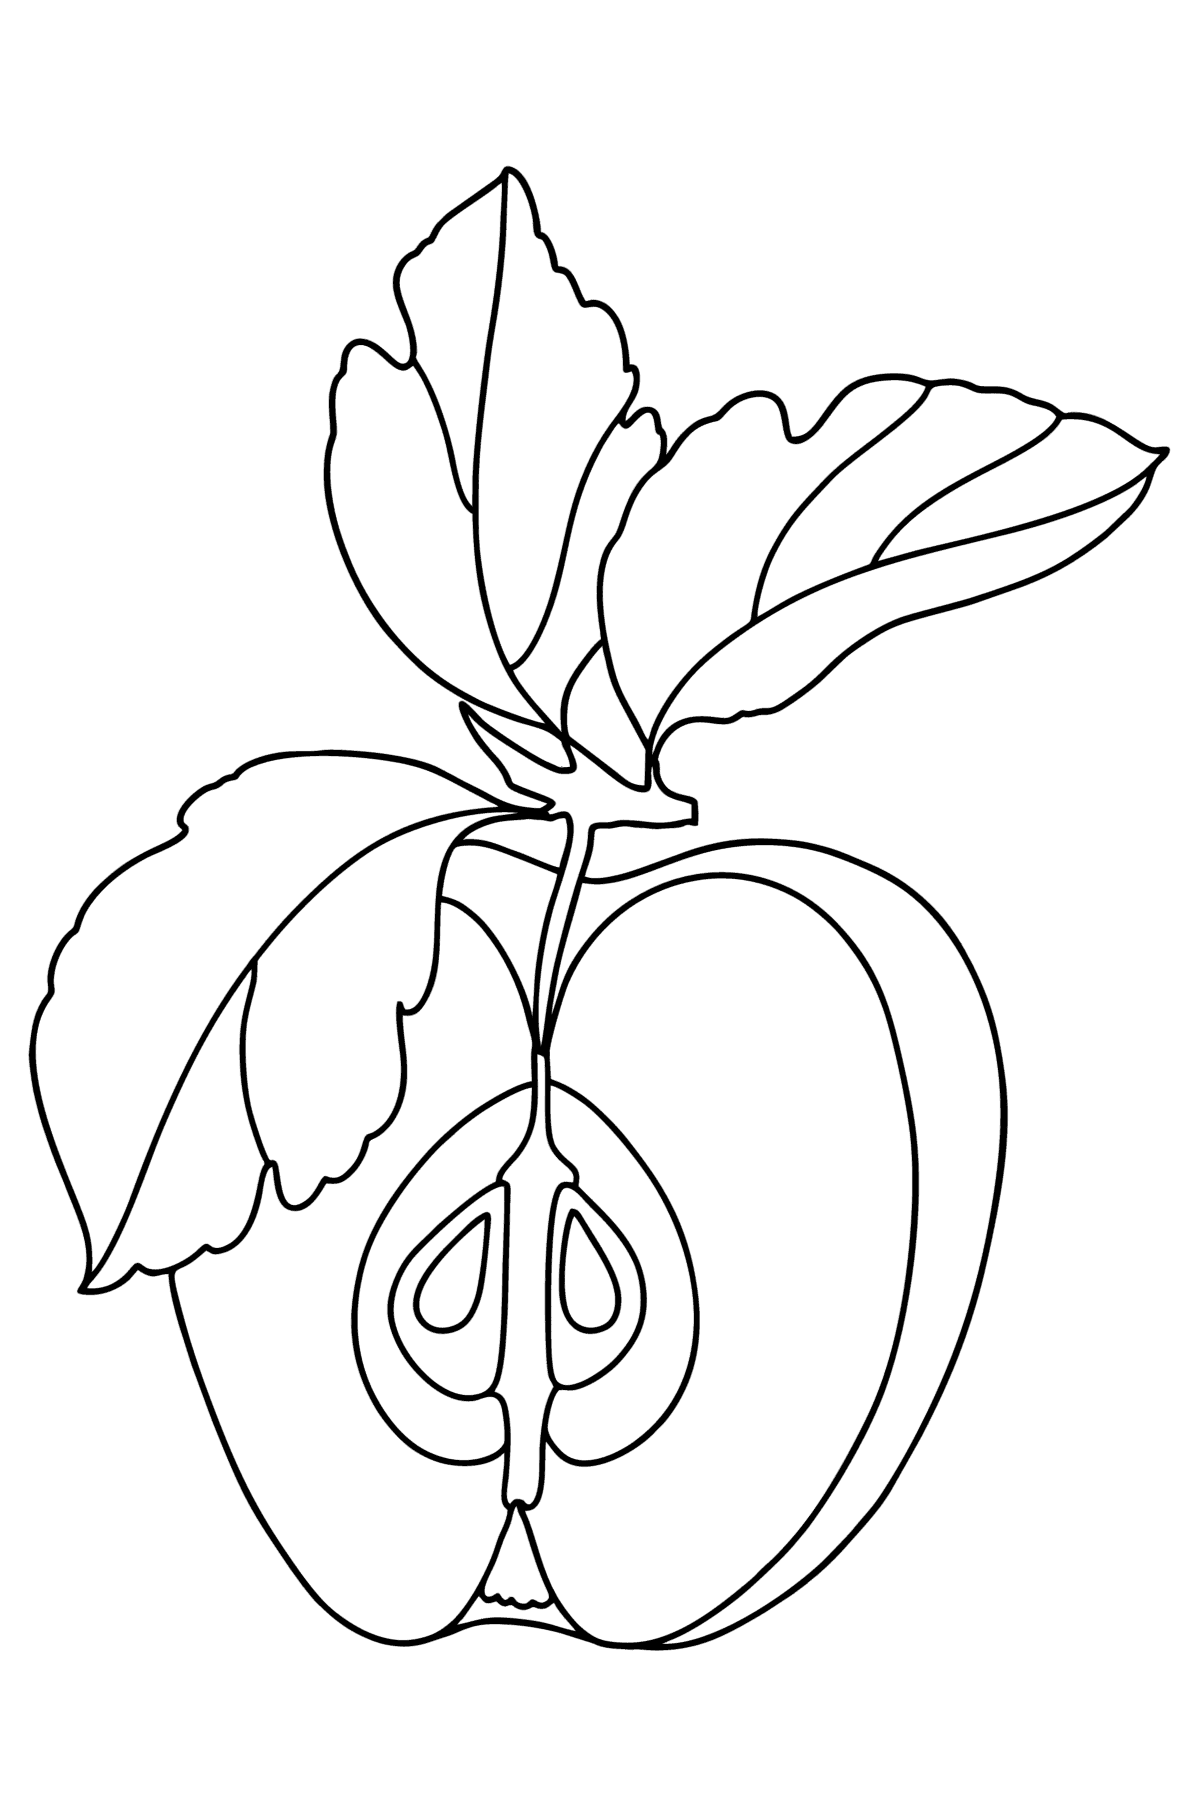 Tegning til fargelegging Et halvt eple - Tegninger til fargelegging for barn